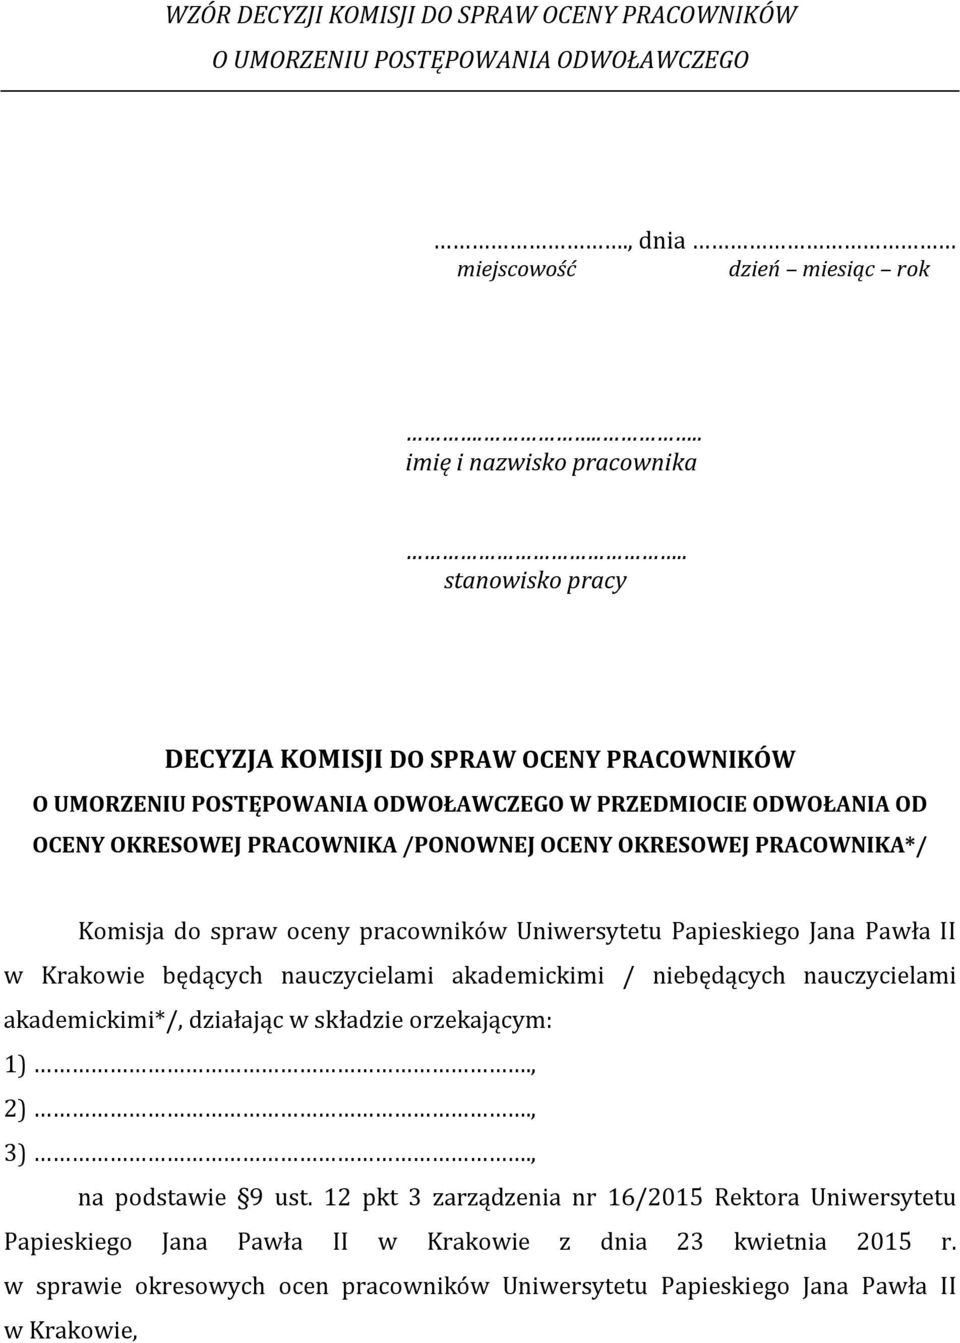 Komisja do spraw oceny pracowników Uniwersytetu Papieskiego Jana Pawła II w Krakowie będących nauczycielami akademickimi / niebędących nauczycielami akademickimi*/, działając w składzie